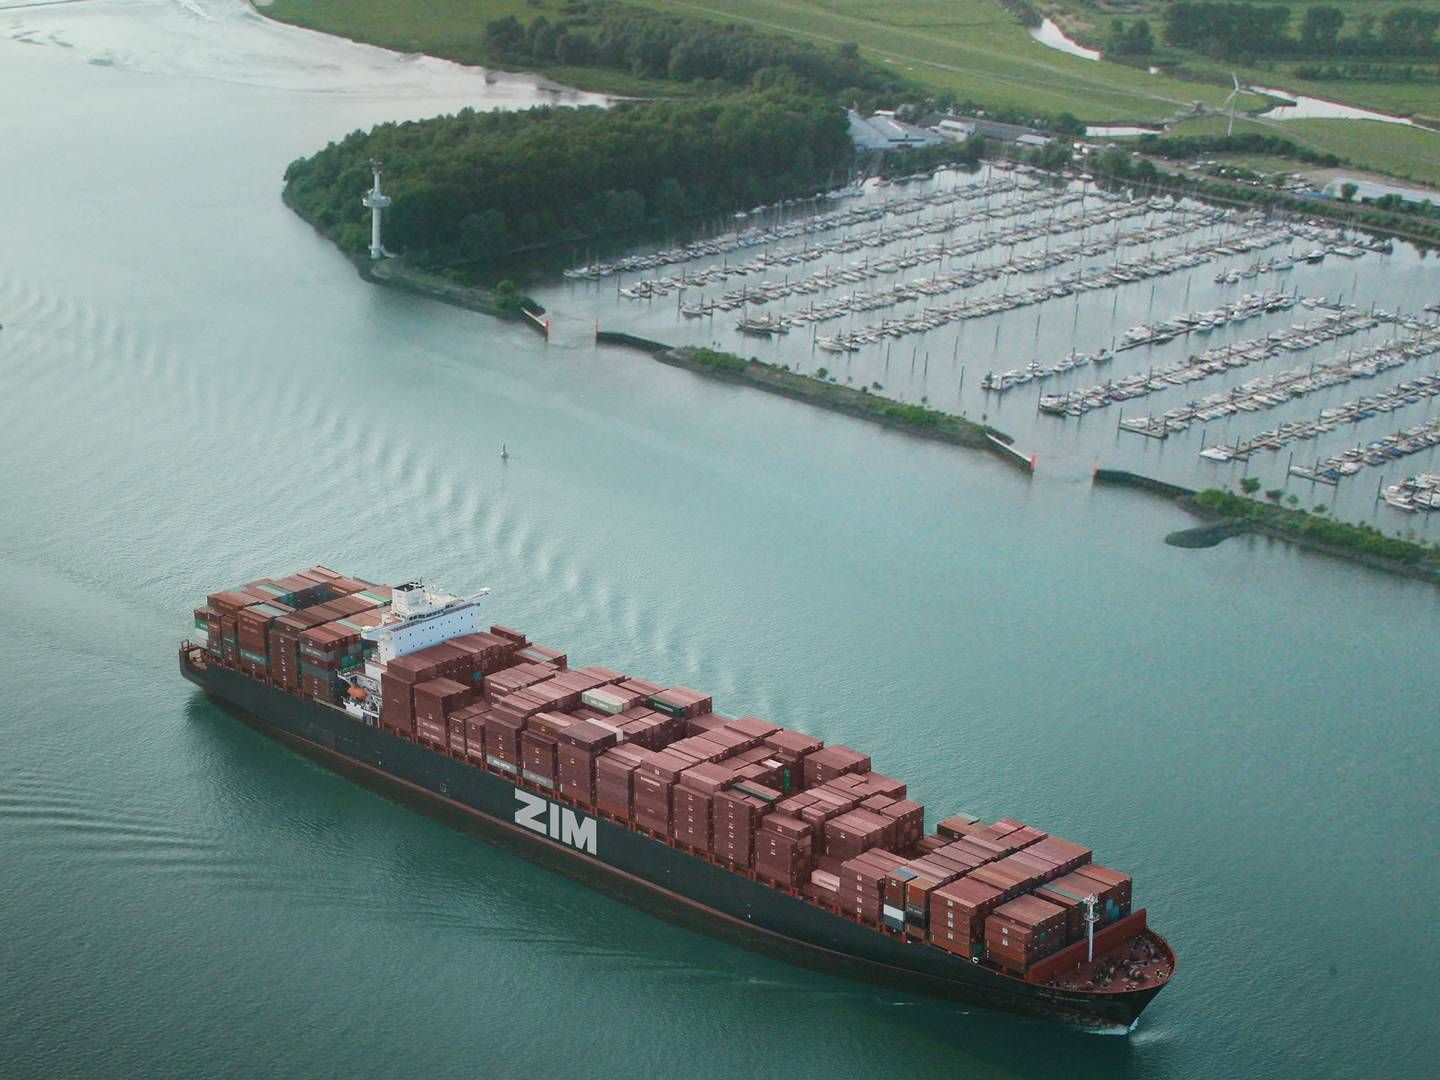 Zim undgår Det Arabiske Hav og Det Røde Hav efter trusler mod sikker transit, oplyser de i en opdatering. | Foto: Zim Integrated Shipping Services